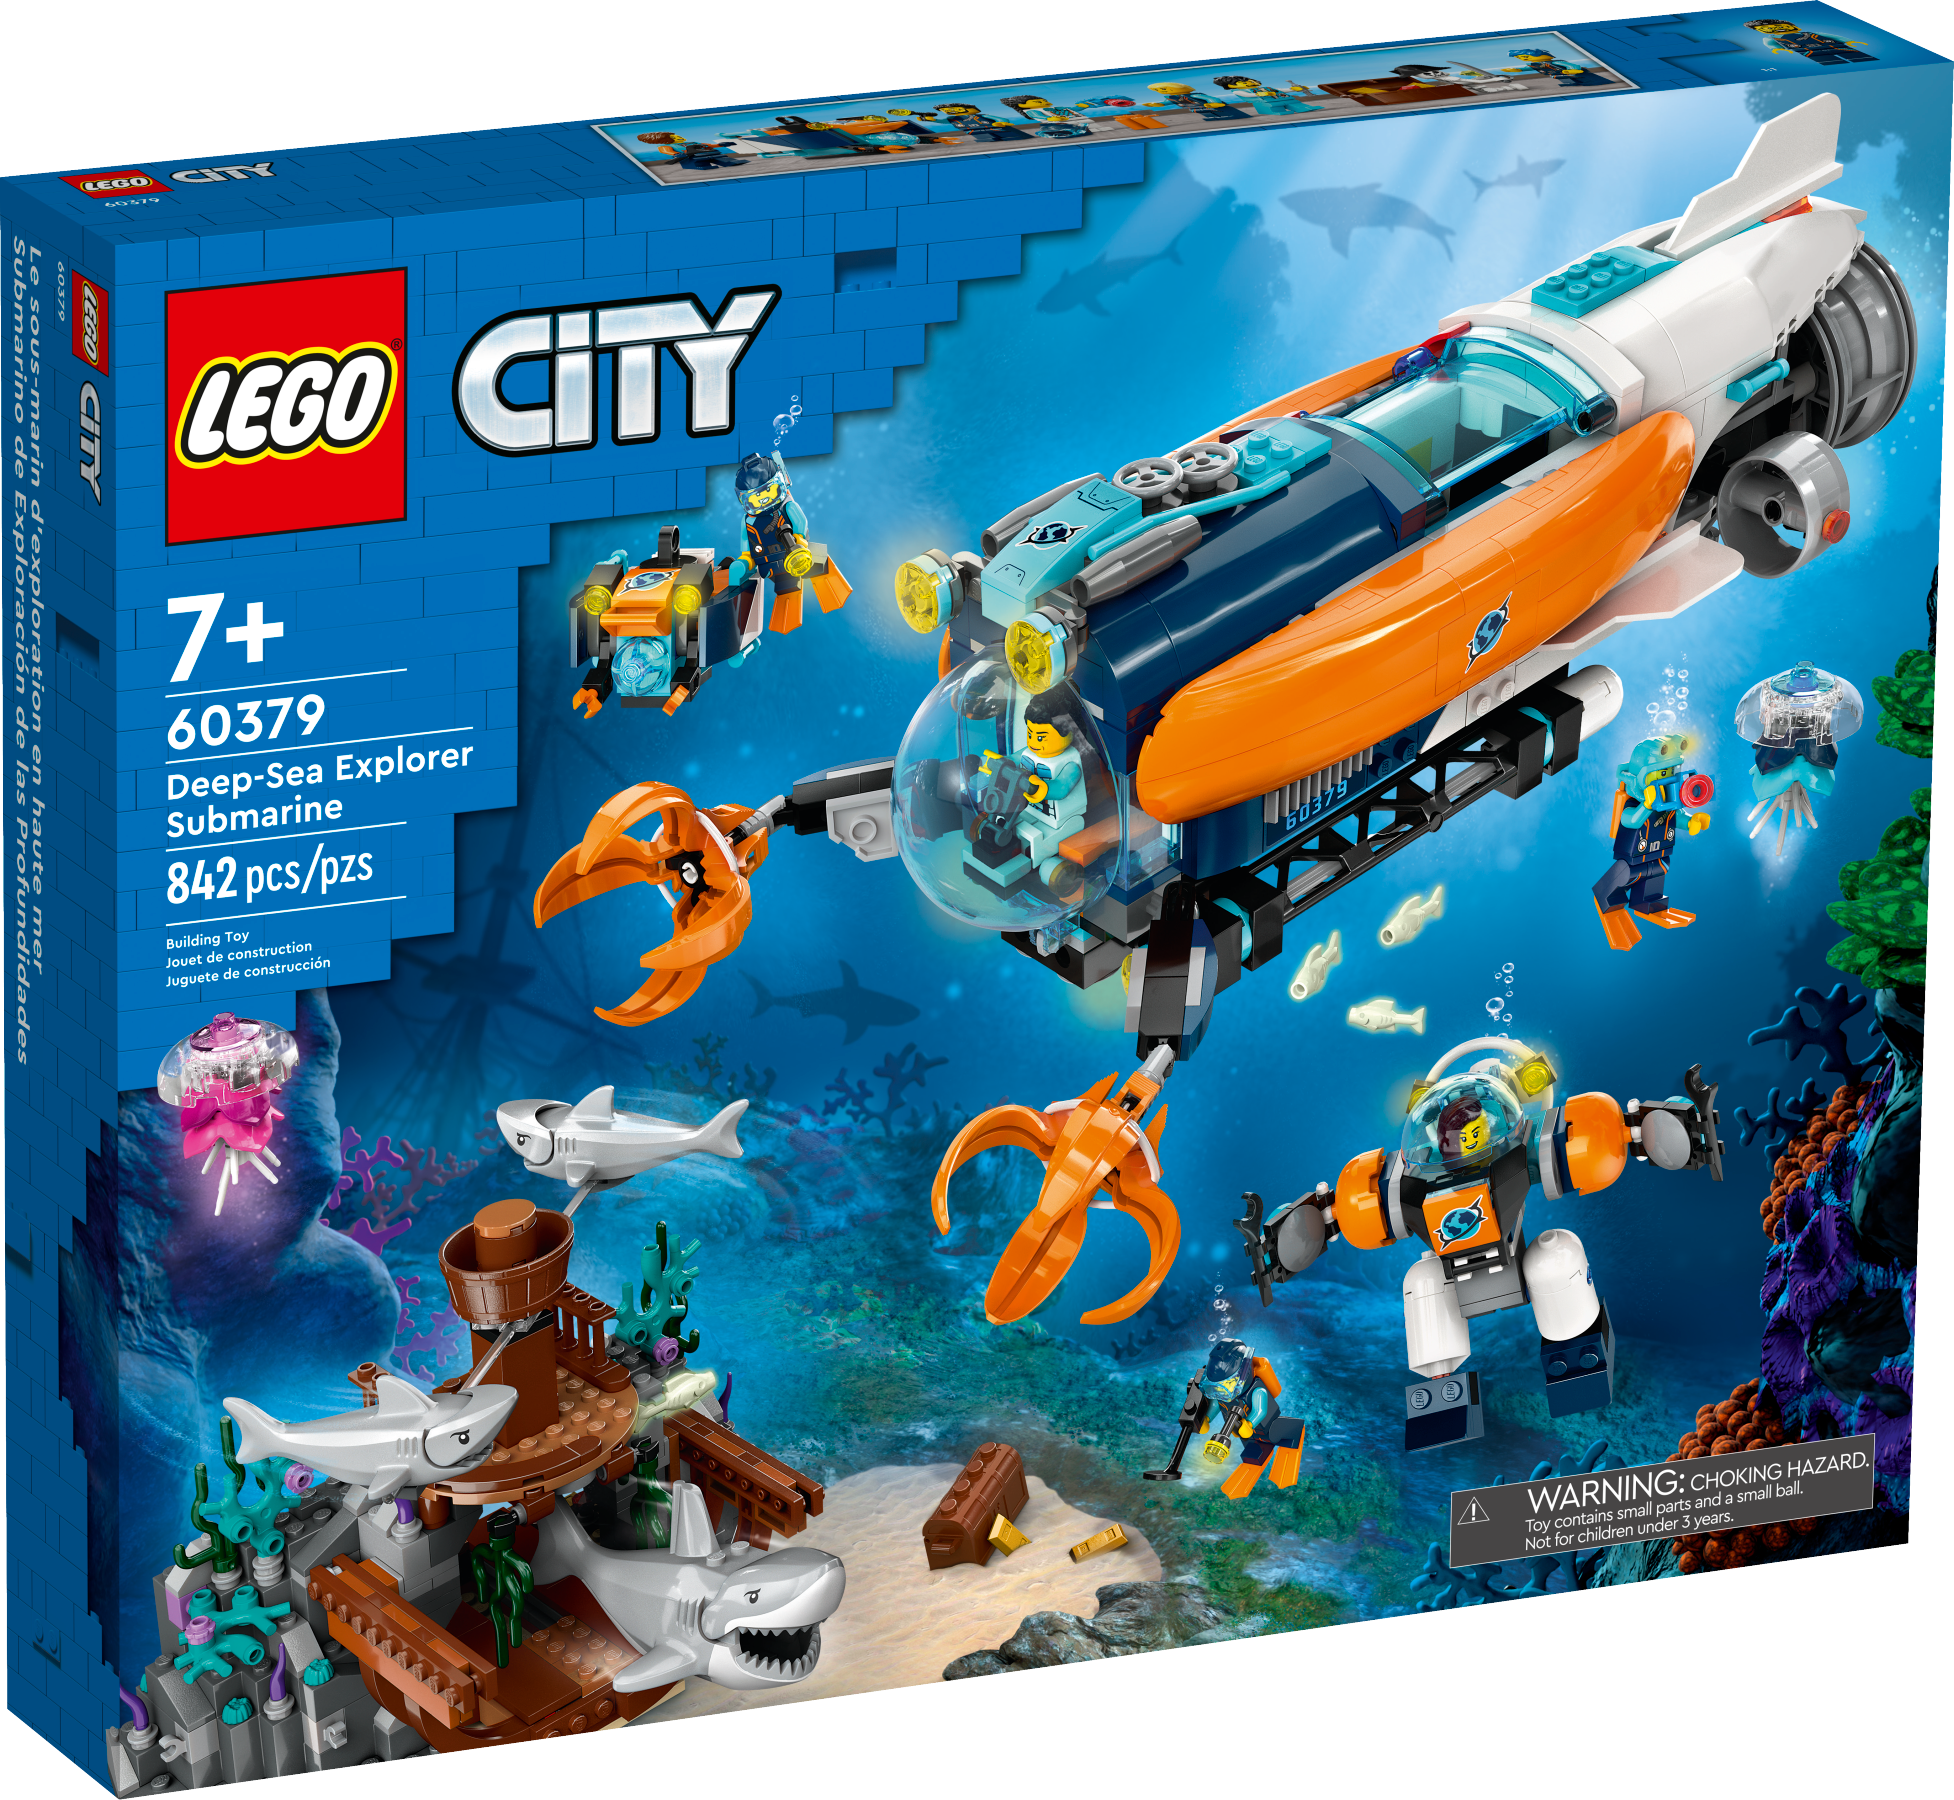 Конструктор LEGO City 60379 Deep-Sea Explorer Submarine, 842 дет.